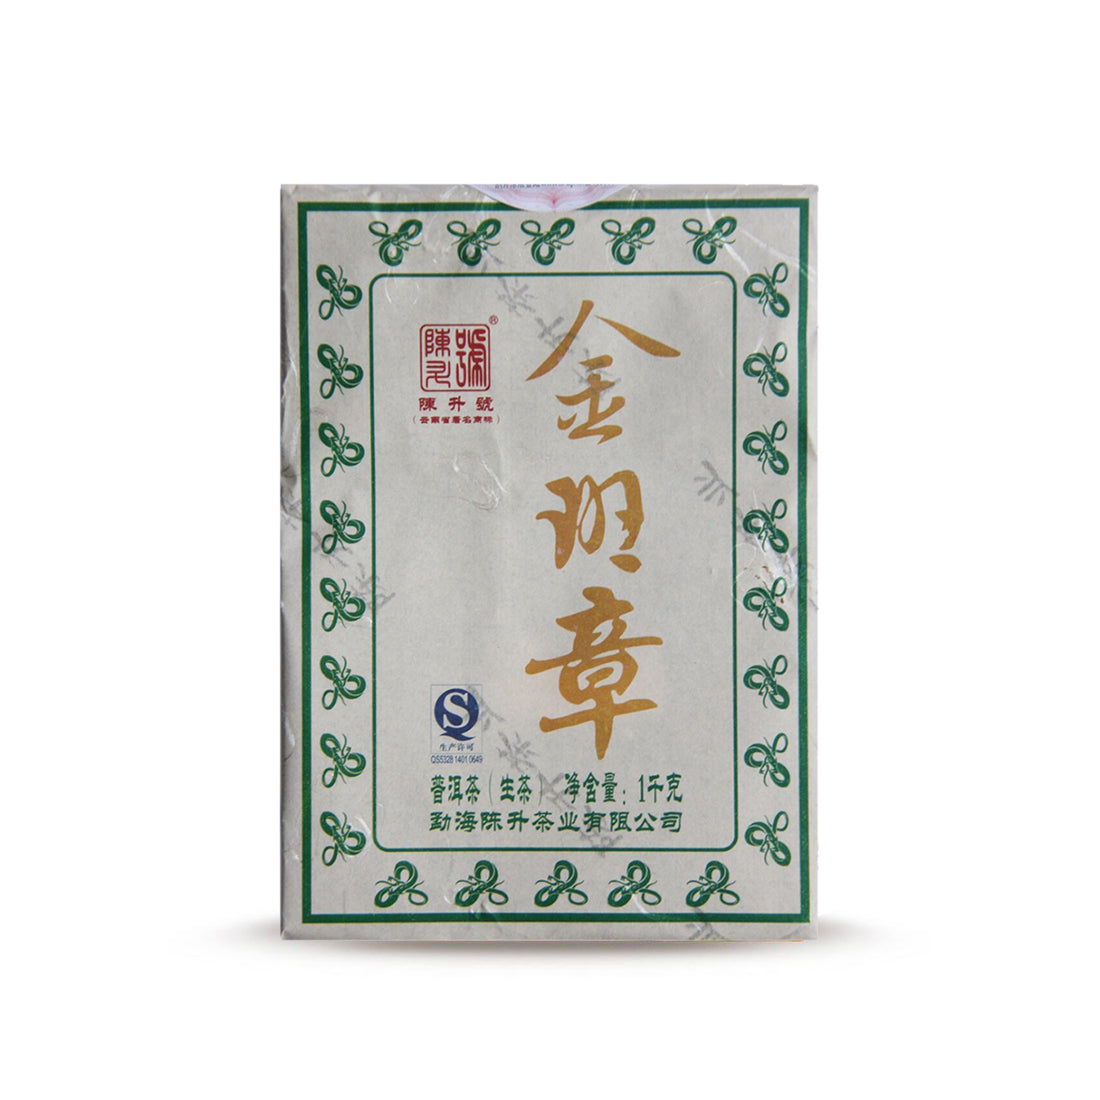 
                  
                    2013 Jin Ban Zhang Raw Pu-erh Tea
                  
                